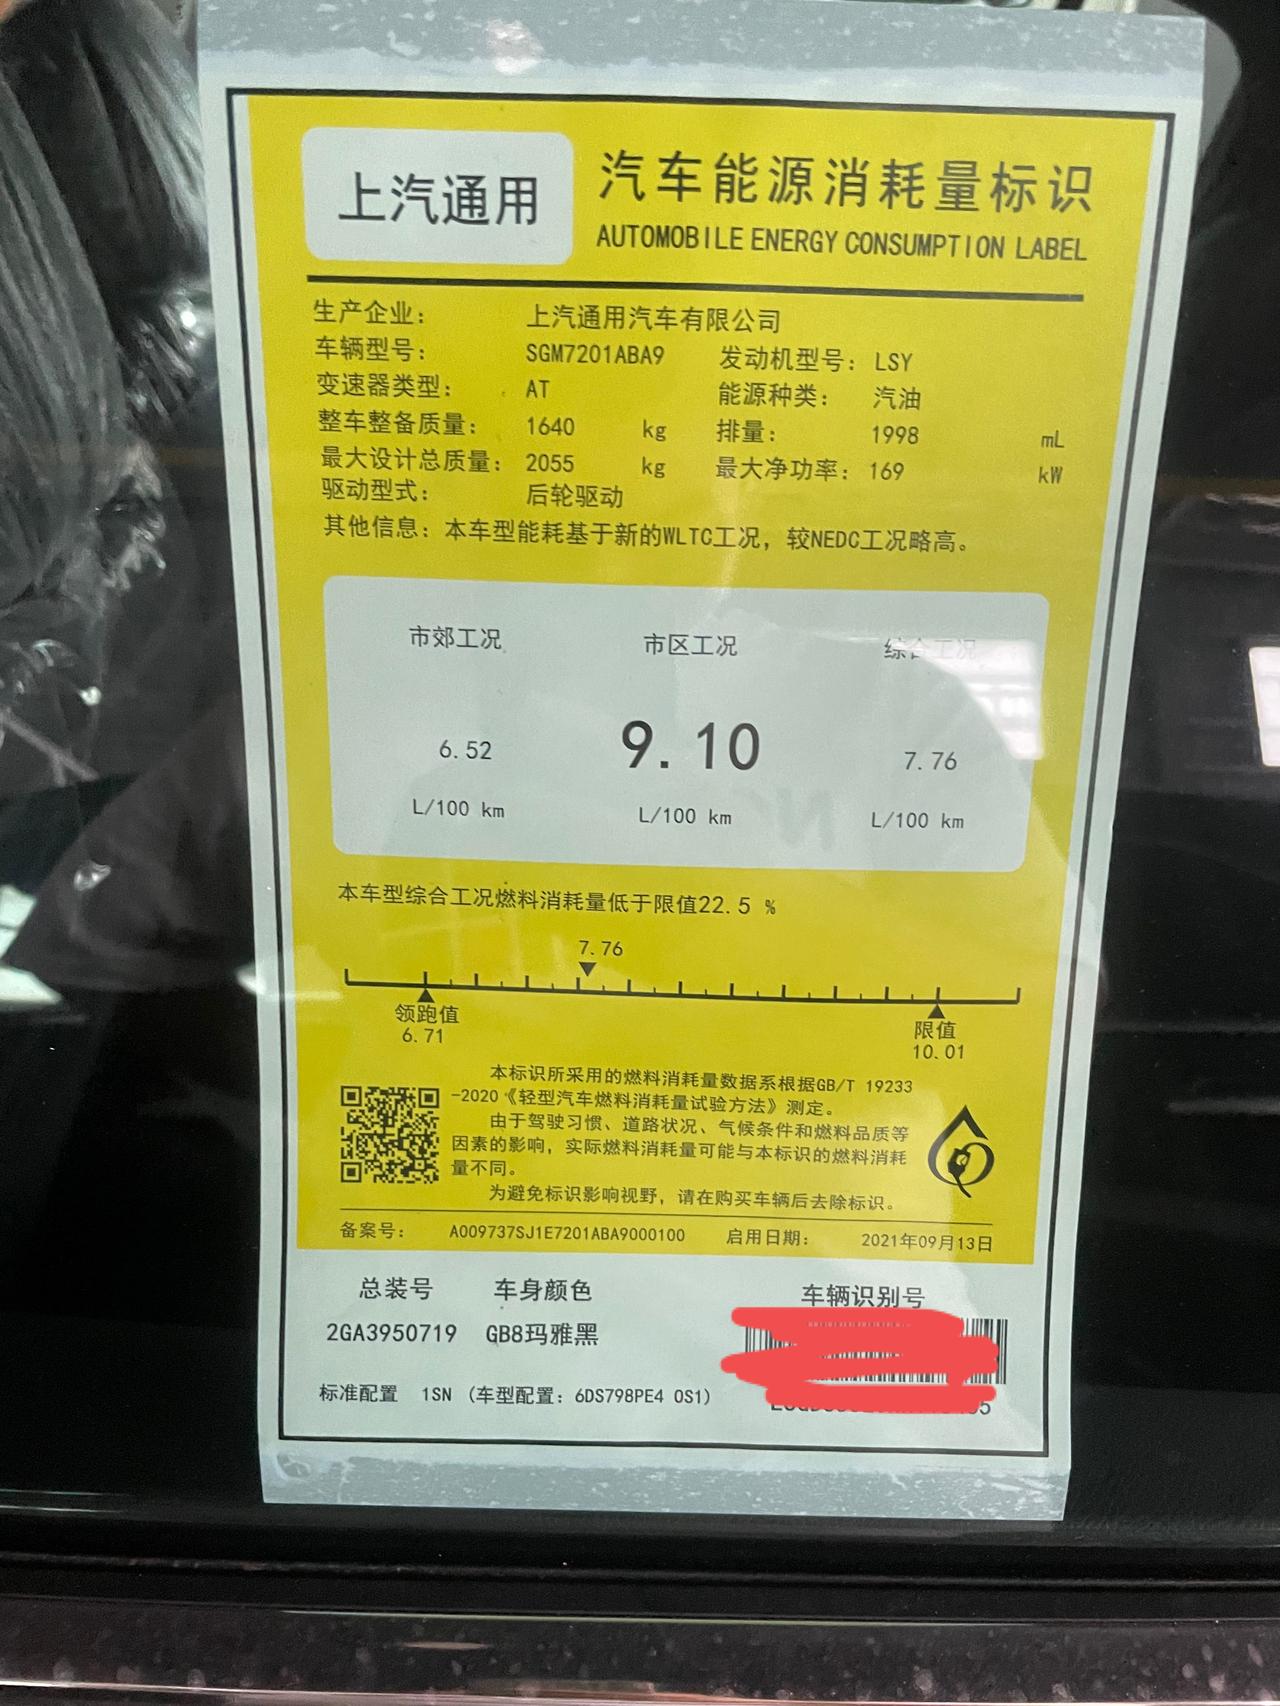 凯迪拉克CT5 在上海订了台凯迪拉克ct5豪华型黑色。明天提车 心里一直有顾虑怕是4s店拿豪标改了bose当豪华卖 